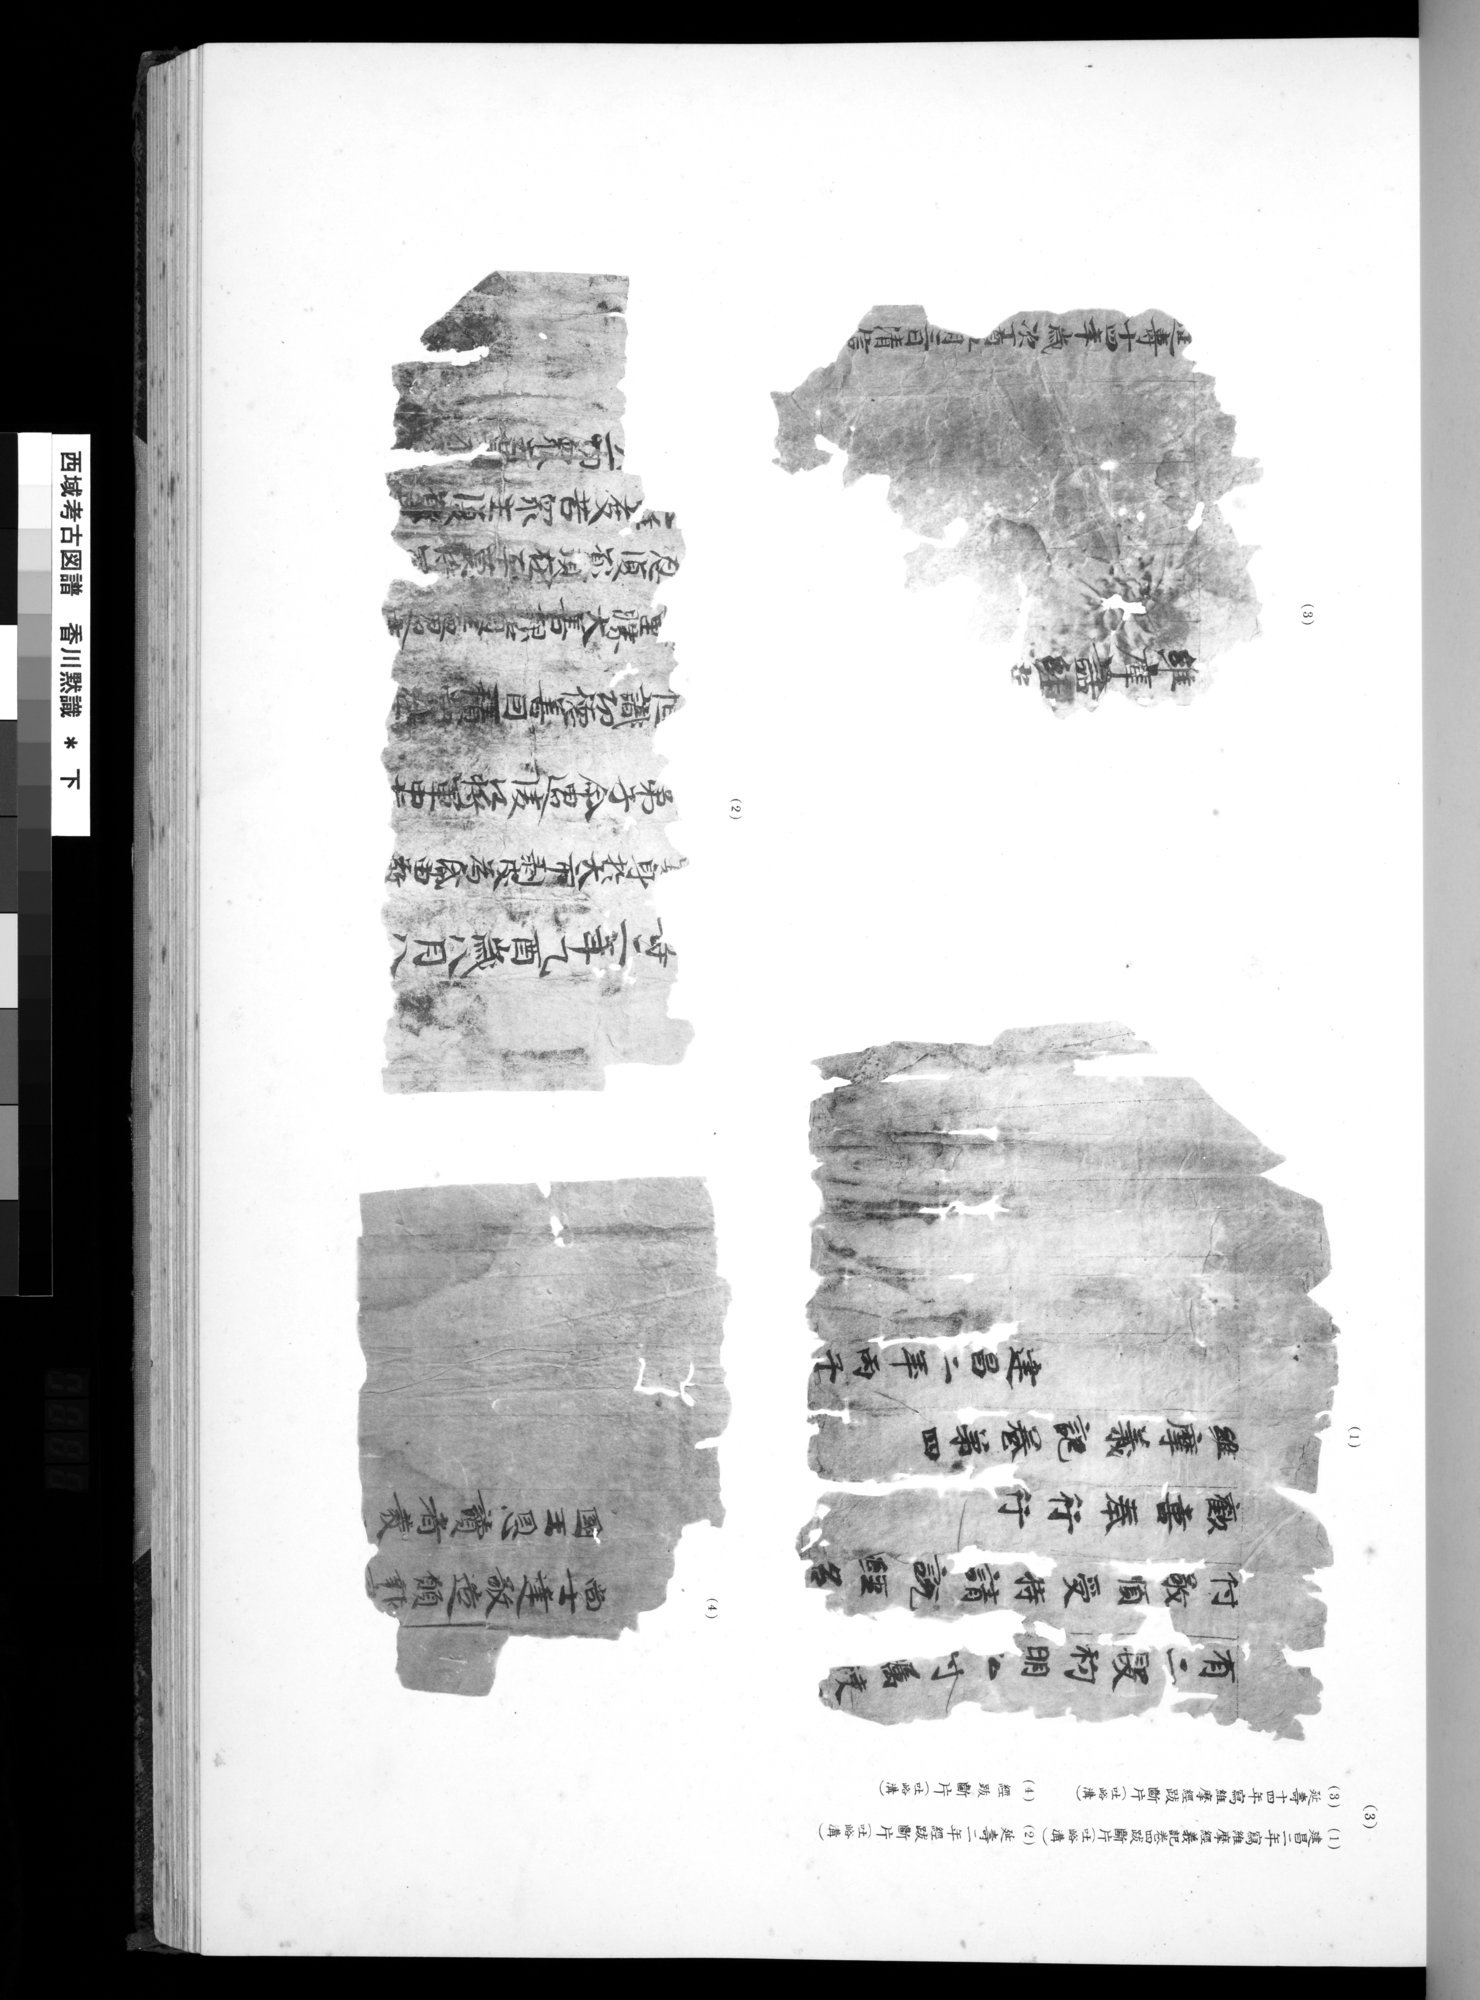 西域考古図譜 : vol.2 / Page 159 (Grayscale High Resolution Image)